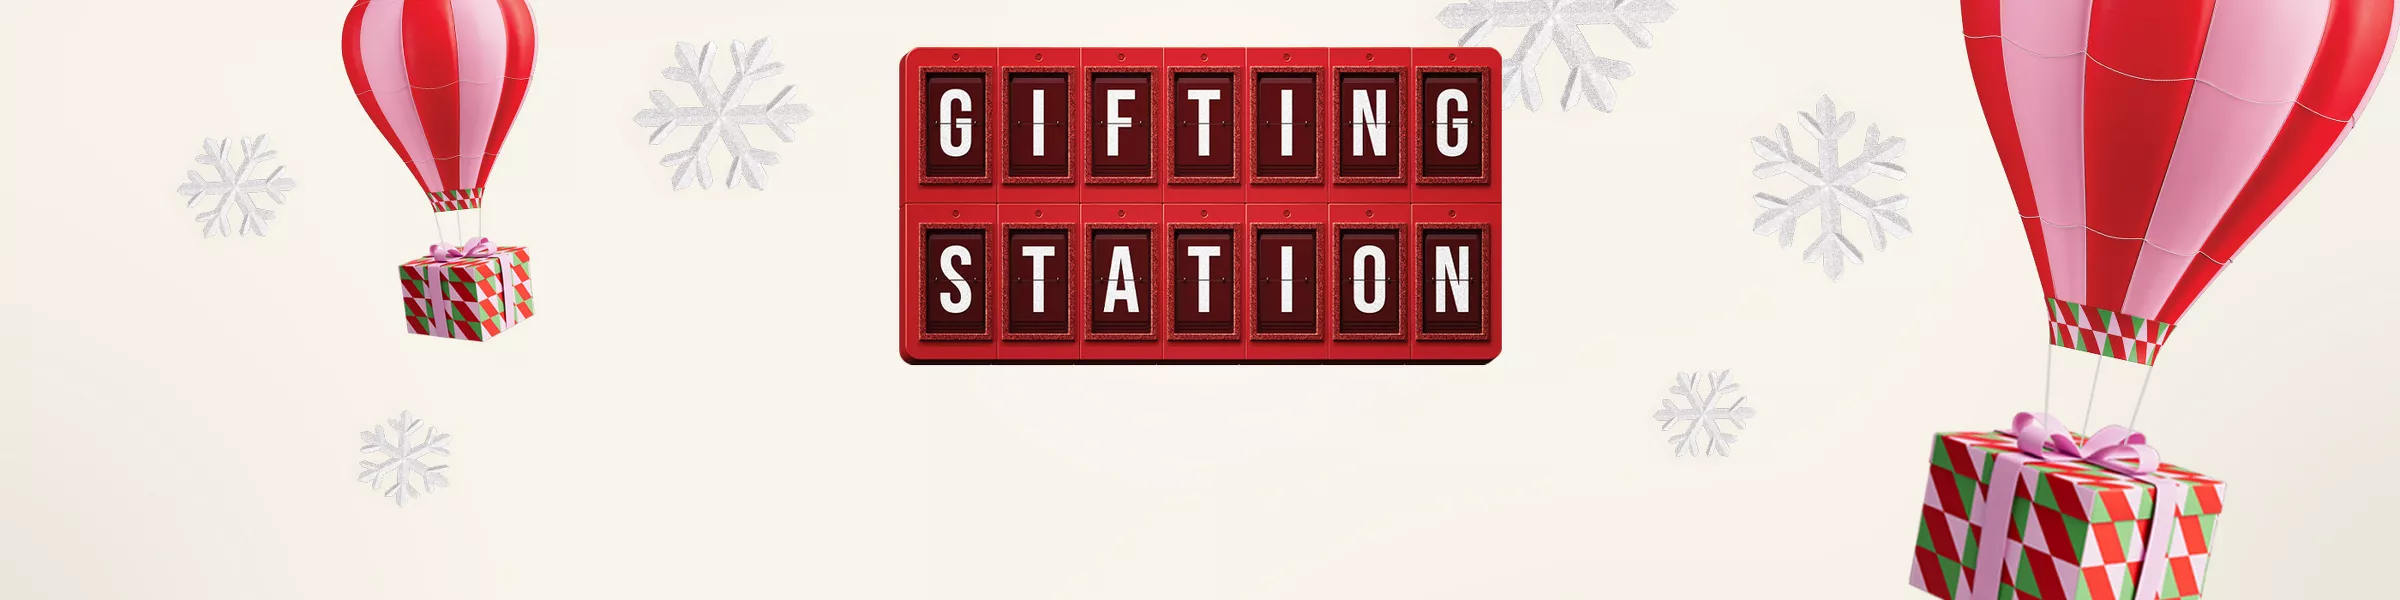 Gifting Station